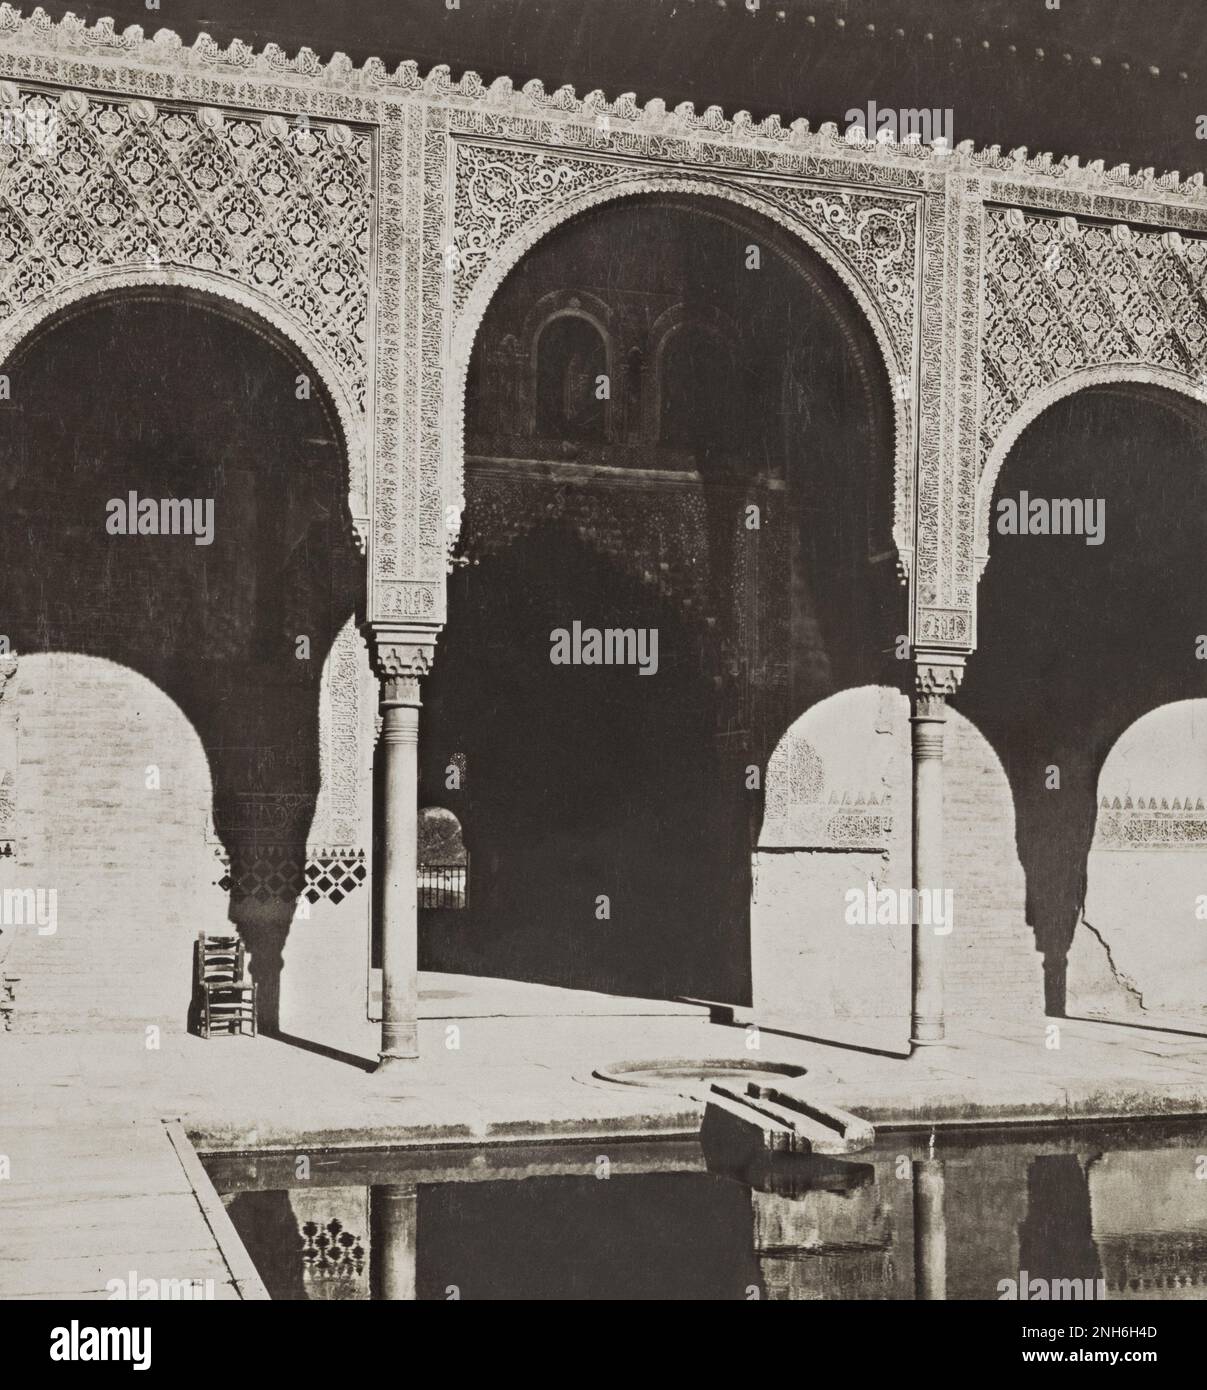 Architektur des alten Spaniens. Vintage-Foto der Alhambra. Granada, Spanien. 1901 Stockfoto